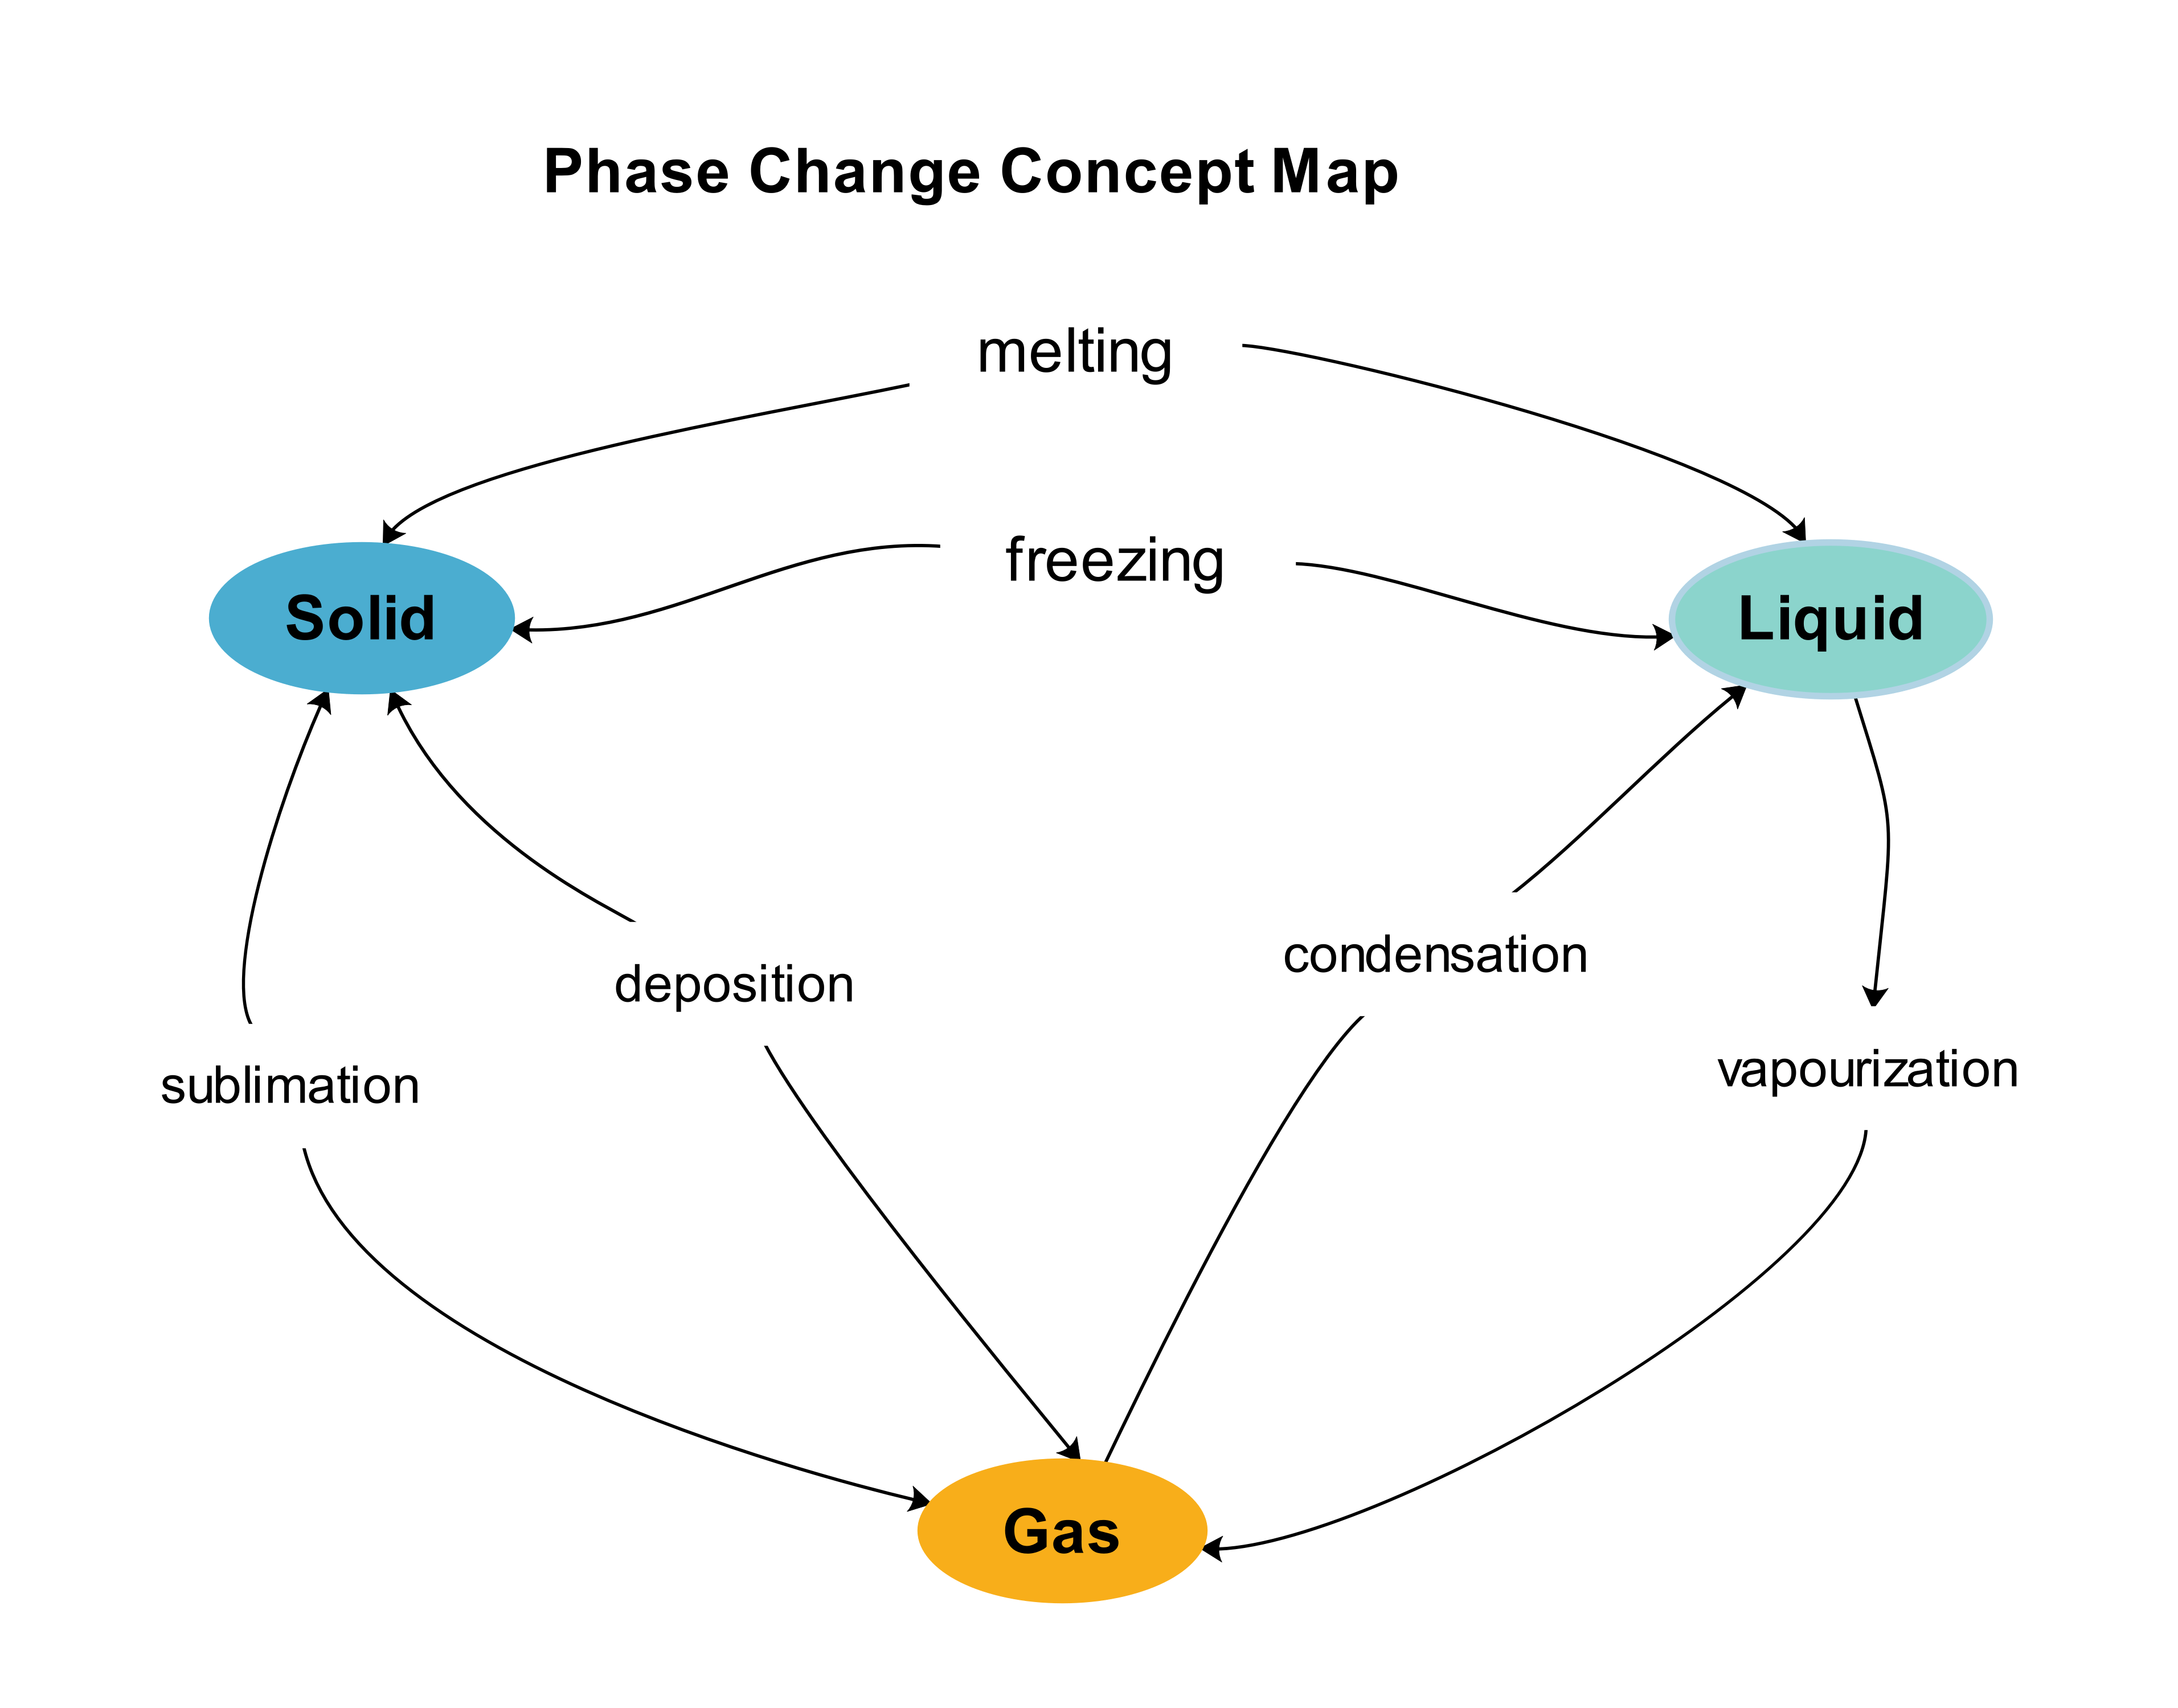 Plantillas de mapas conceptuales de cambio de fase